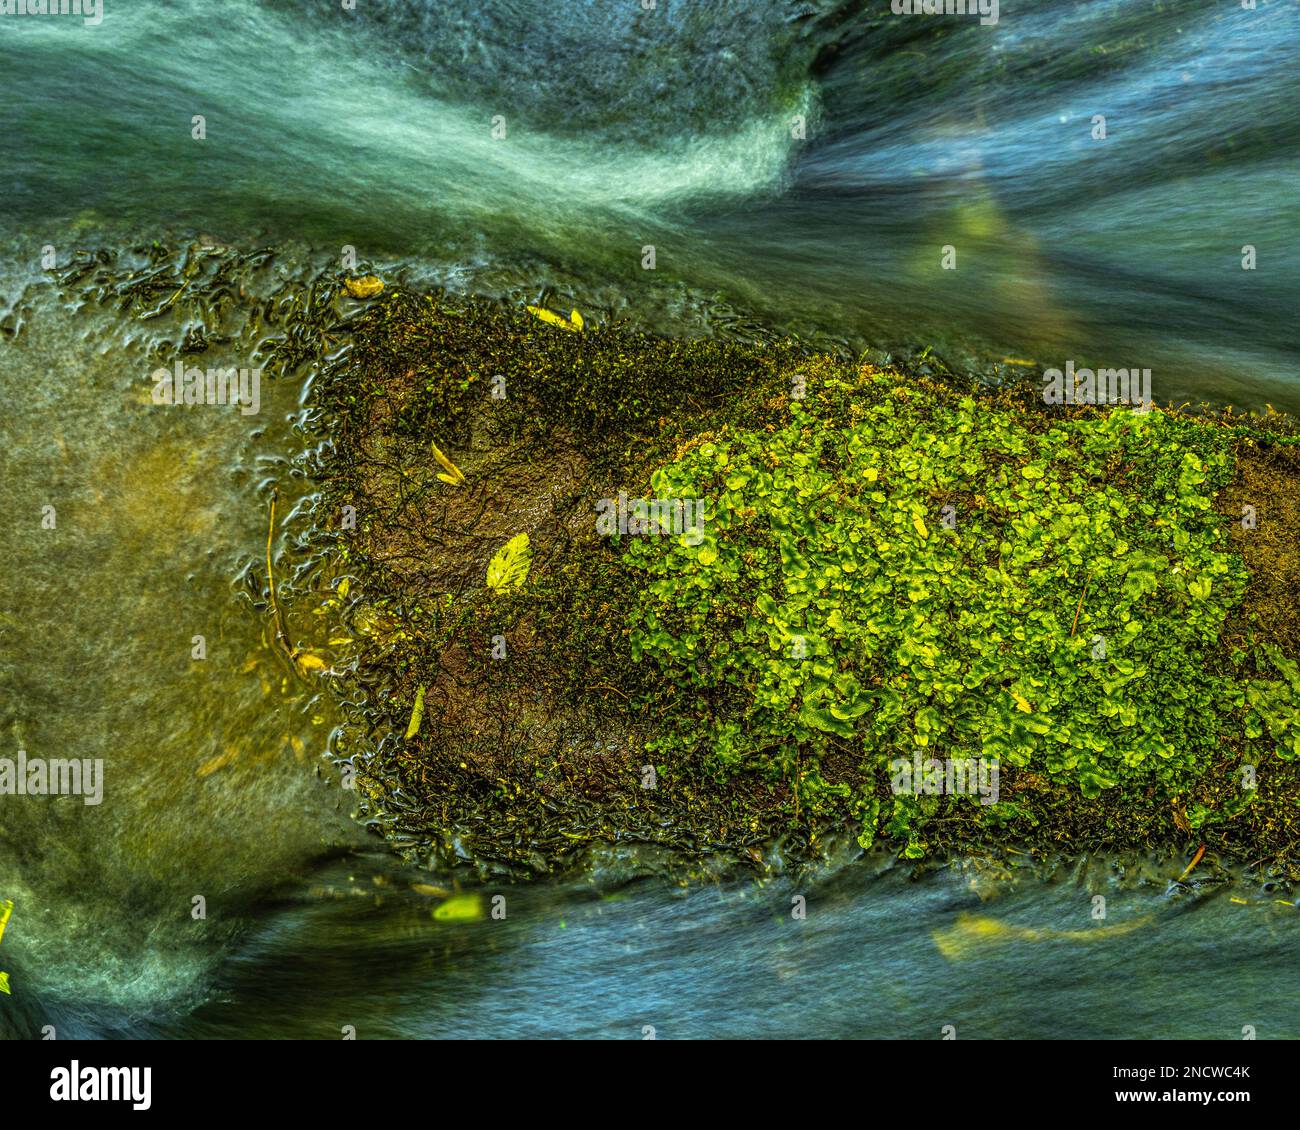 La mousse verte couvre une roche humide entre le flux de deux ruisseaux d'eau dans un torrent. Latium, Italie, Europe Banque D'Images